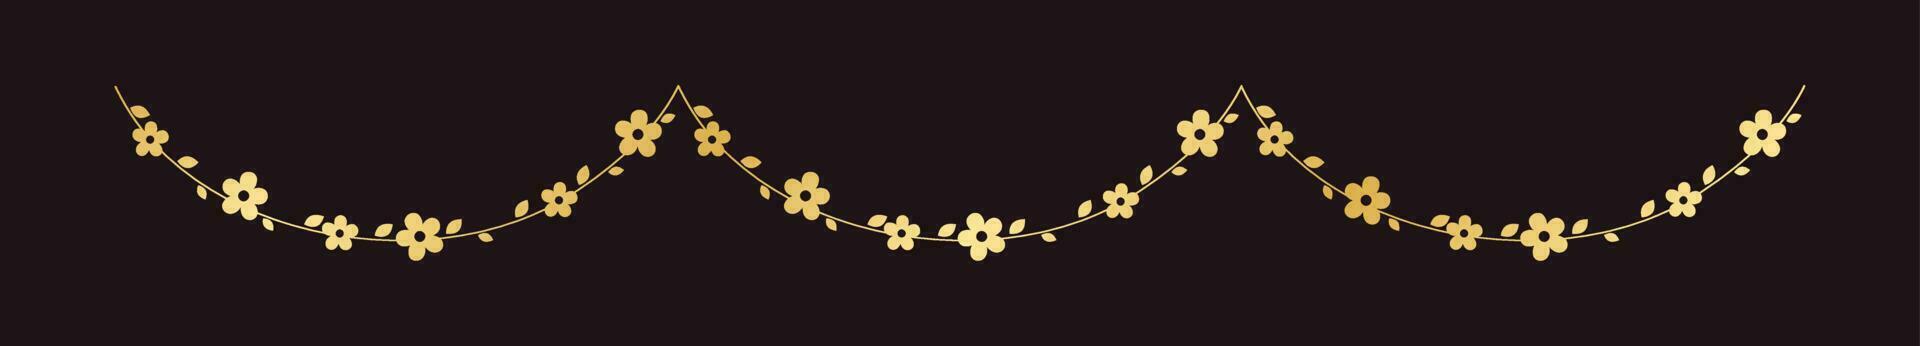 gouden hangende bloem slinger vector illustratie. gemakkelijk goud bloemen botanisch ontwerp elementen voor de lente.